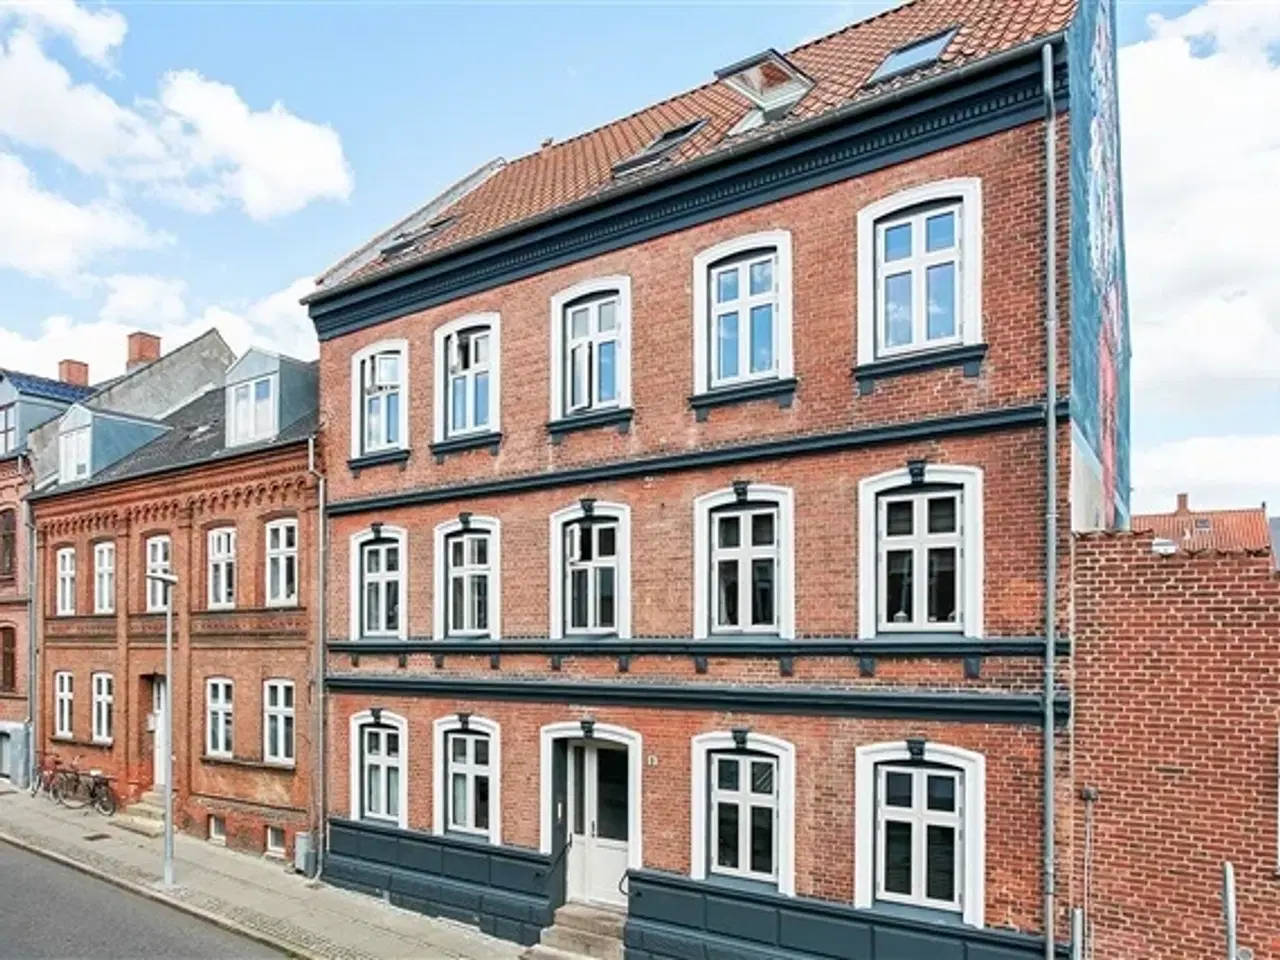 Billede 1 - Gersdorffsgade, 82 m2, 4 værelser, 6.395 kr., Horsens, Vejle